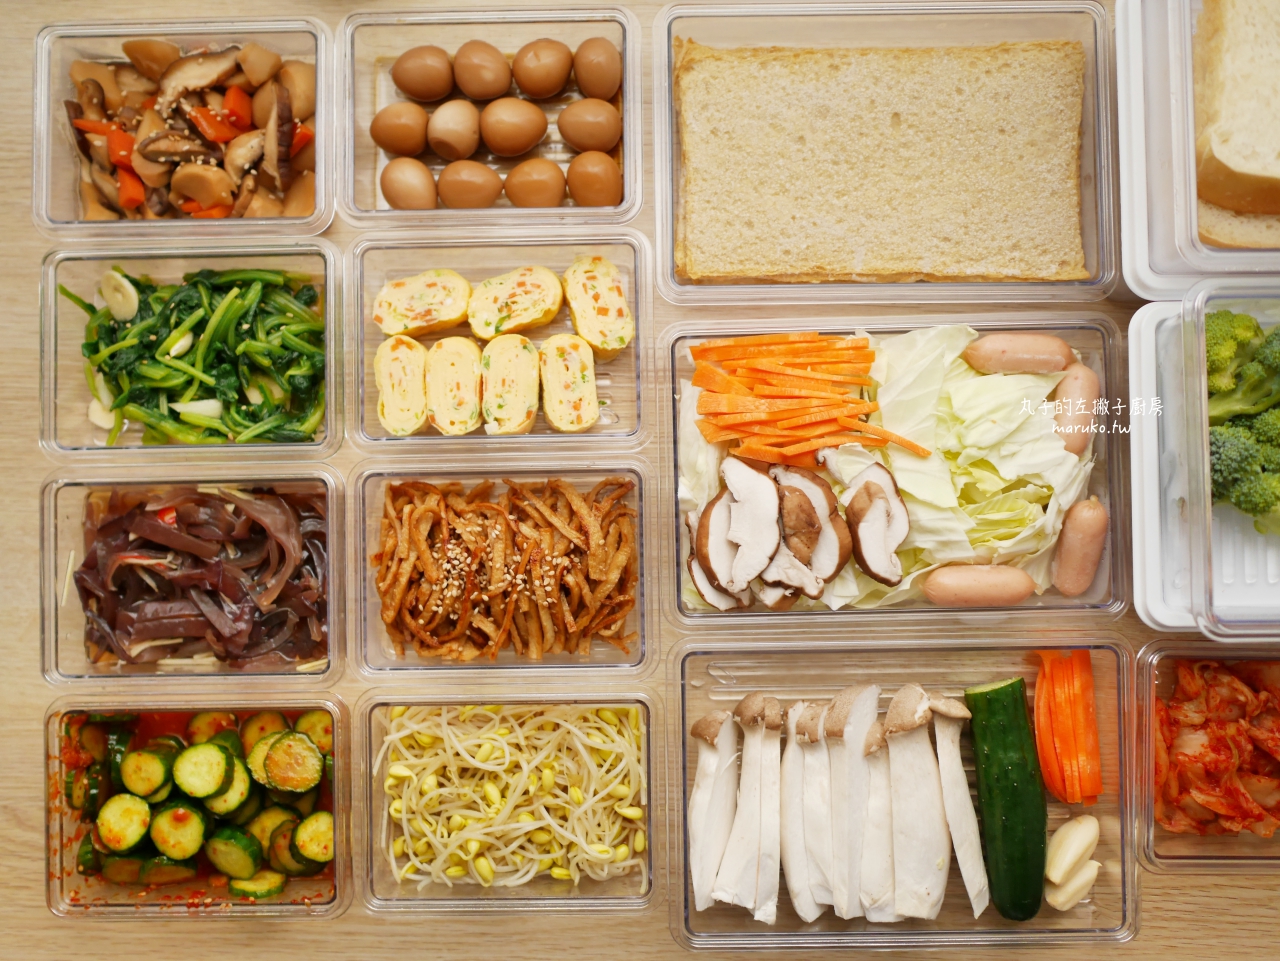 【食譜】十種韓式小菜 韓國昌信收納保鮮盒 運用實作分享 @Maruko與美食有個約會